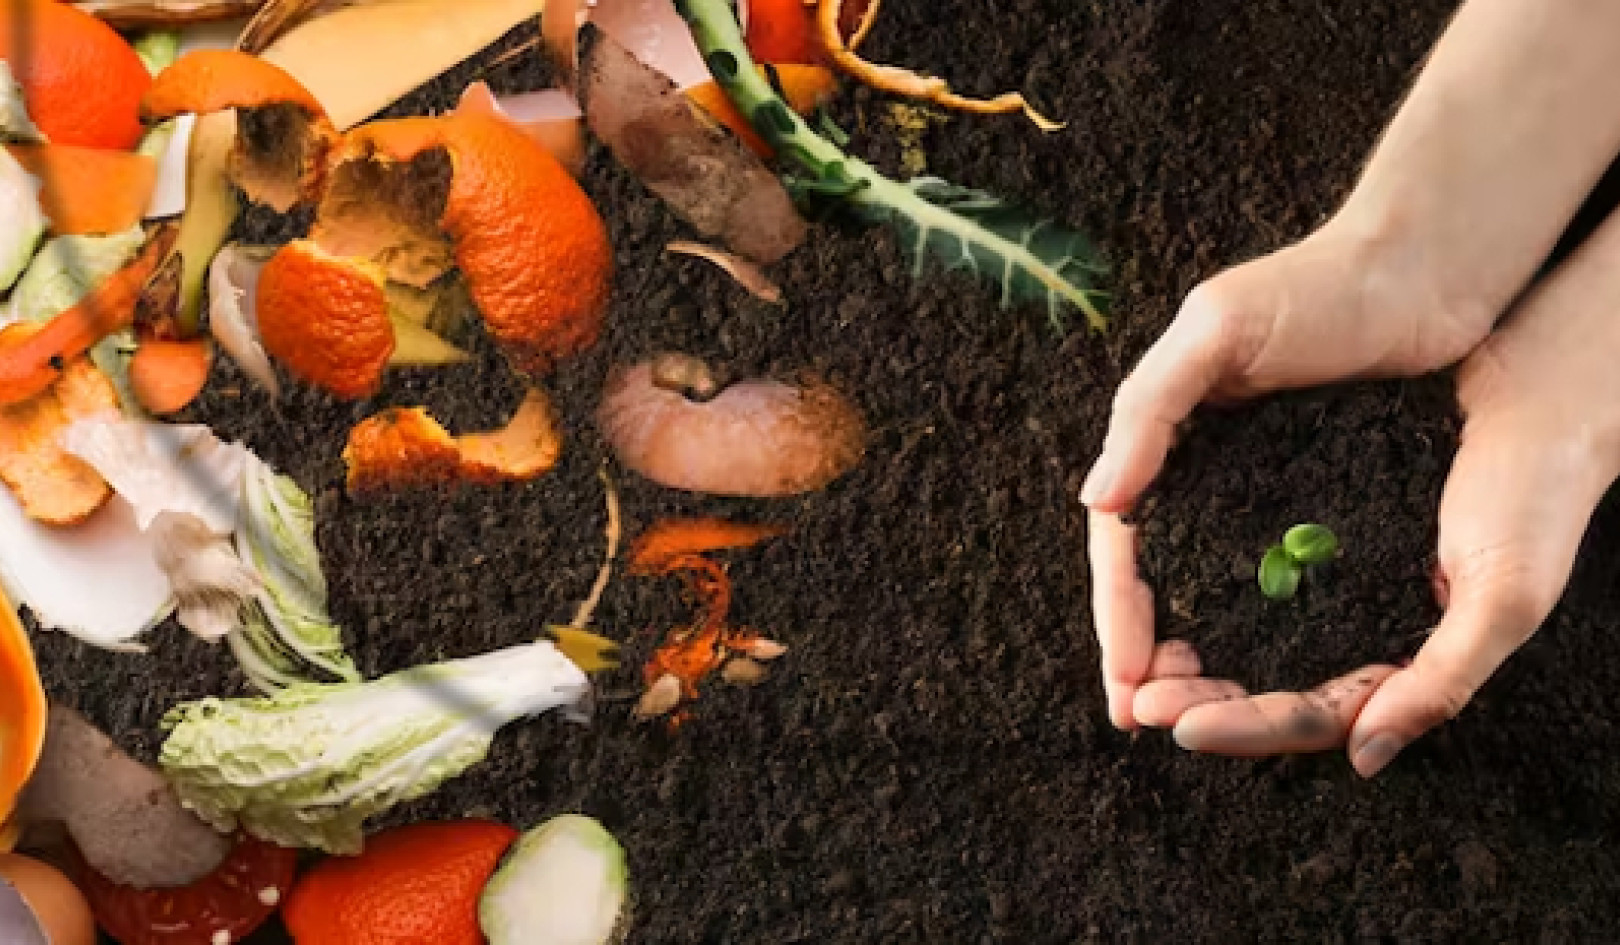 Des déchets à la richesse : pourquoi le compostage des déchets alimentaires vaut mieux que l'enfouissement